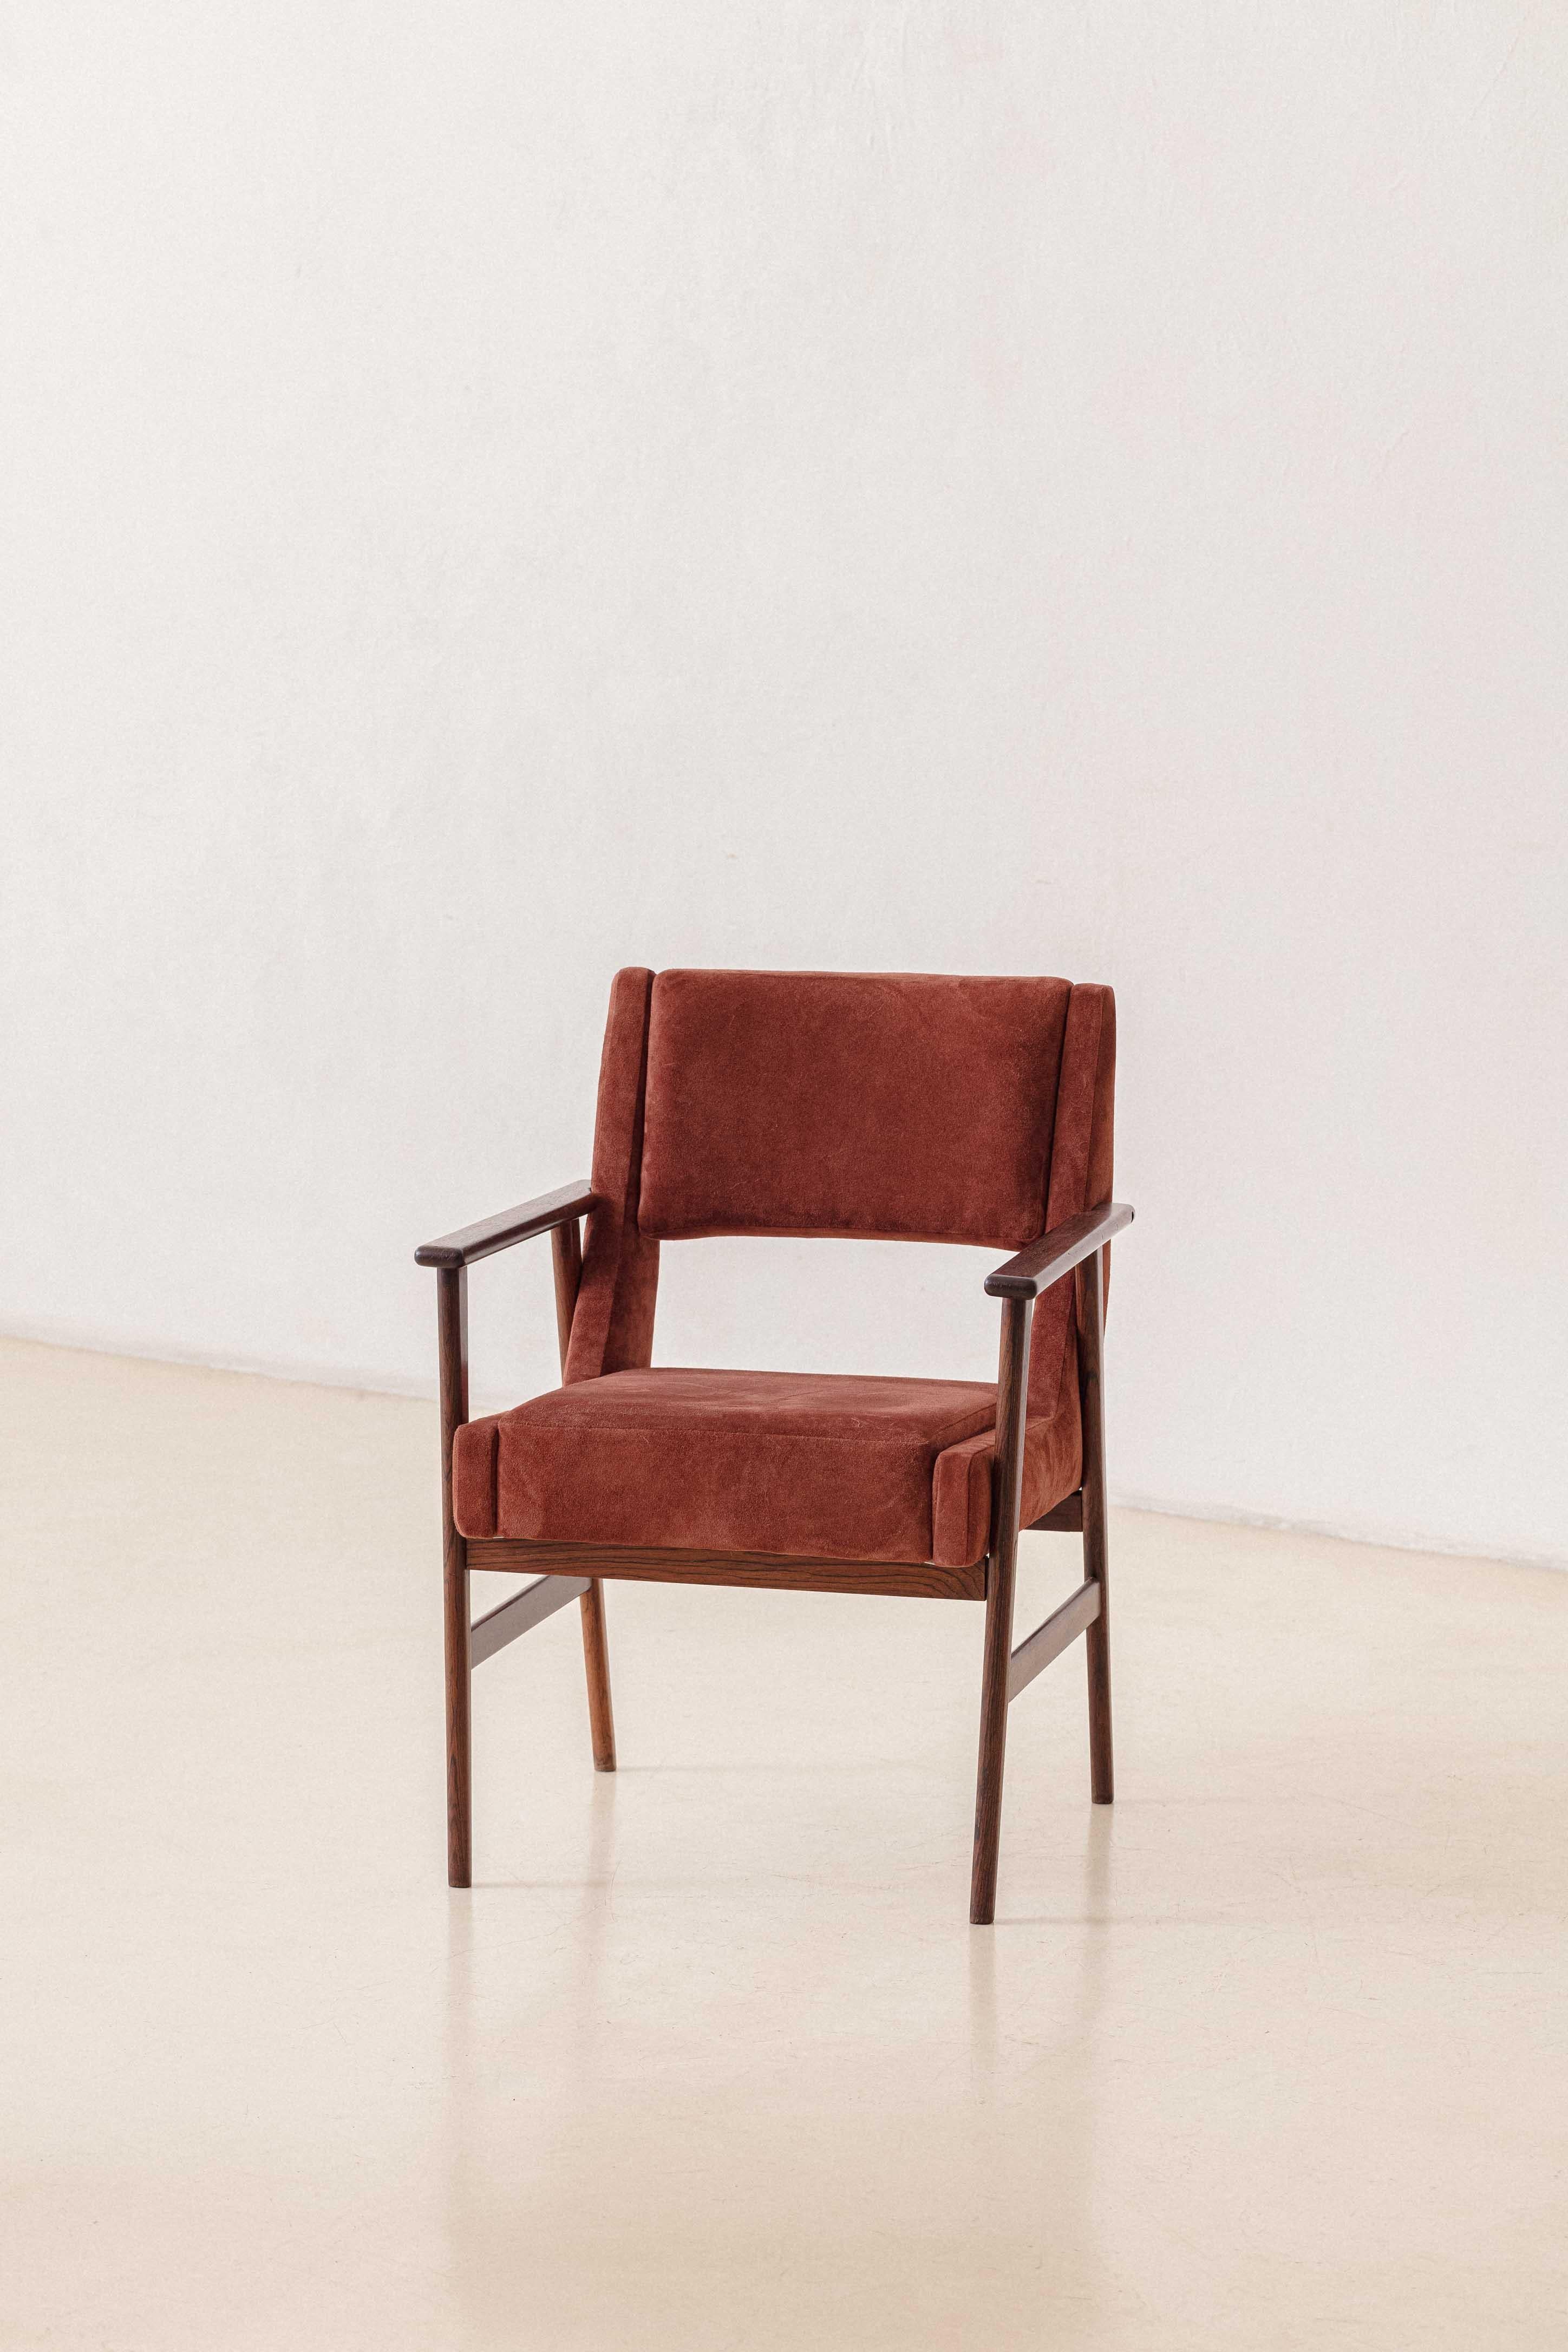 Cette chaise avec accoudoirs a été produite par Cantù Móveis e Interiores Ltda. dans les années 1960 et présentée dans le catalogue de l'entreprise de cette période. Avec une structure en bois de rose massif, la pièce a reçu un nouveau revêtement en